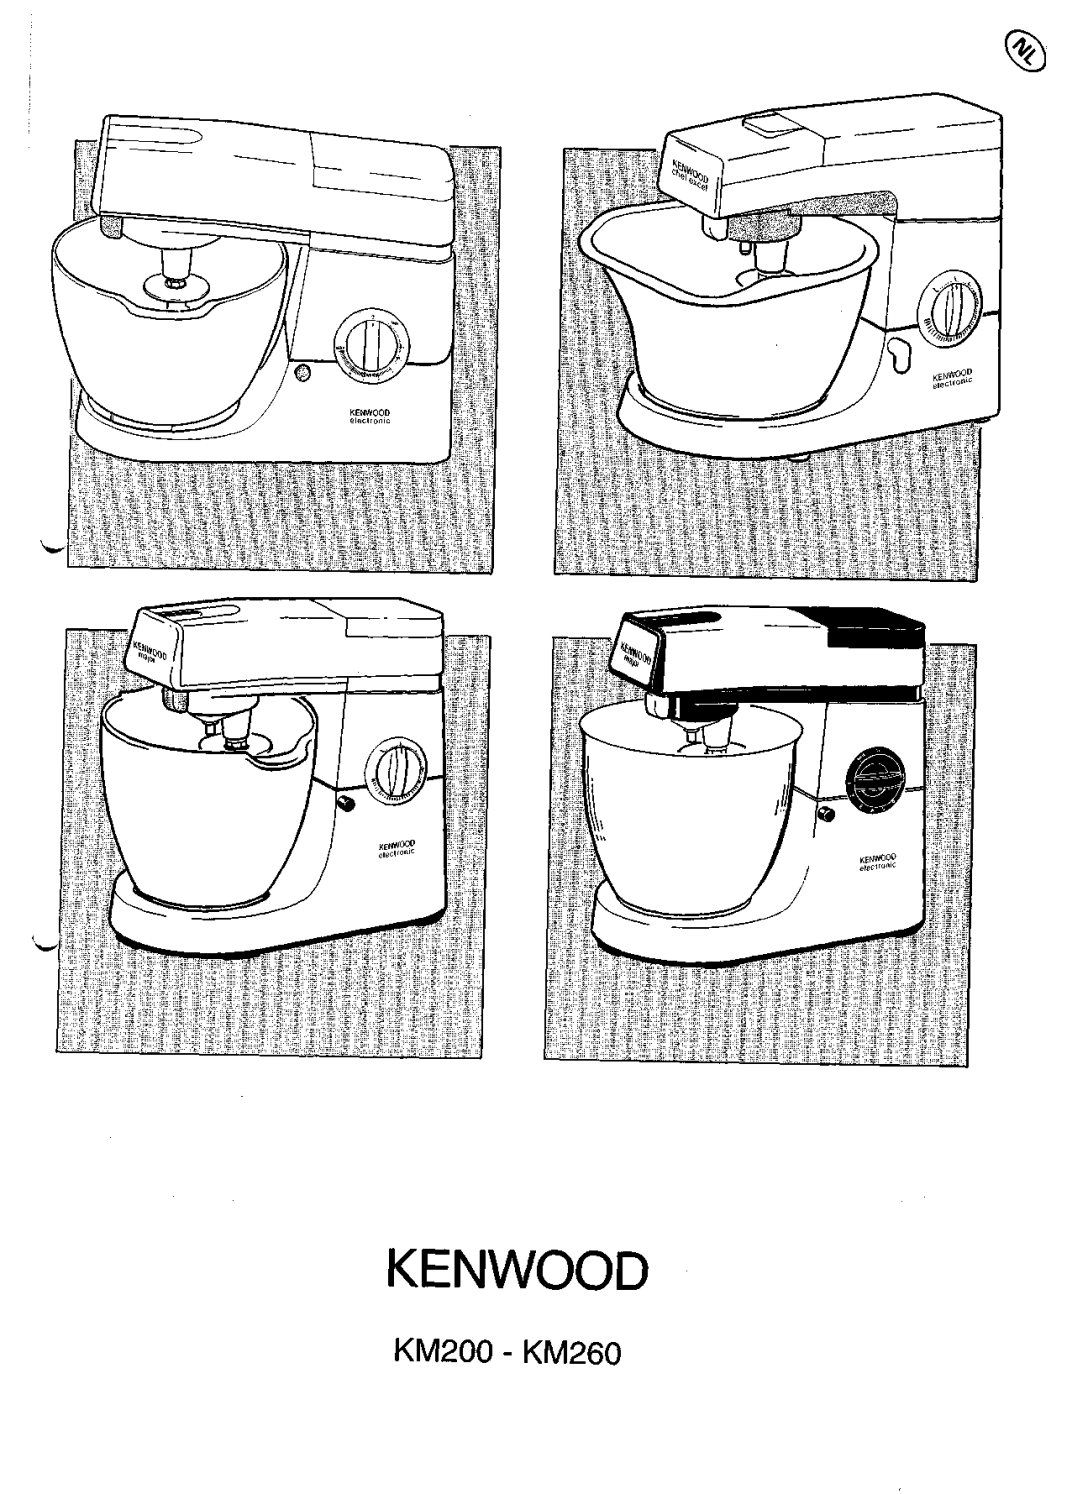 Kenwood manual Kenwood, KM200 - KM260 